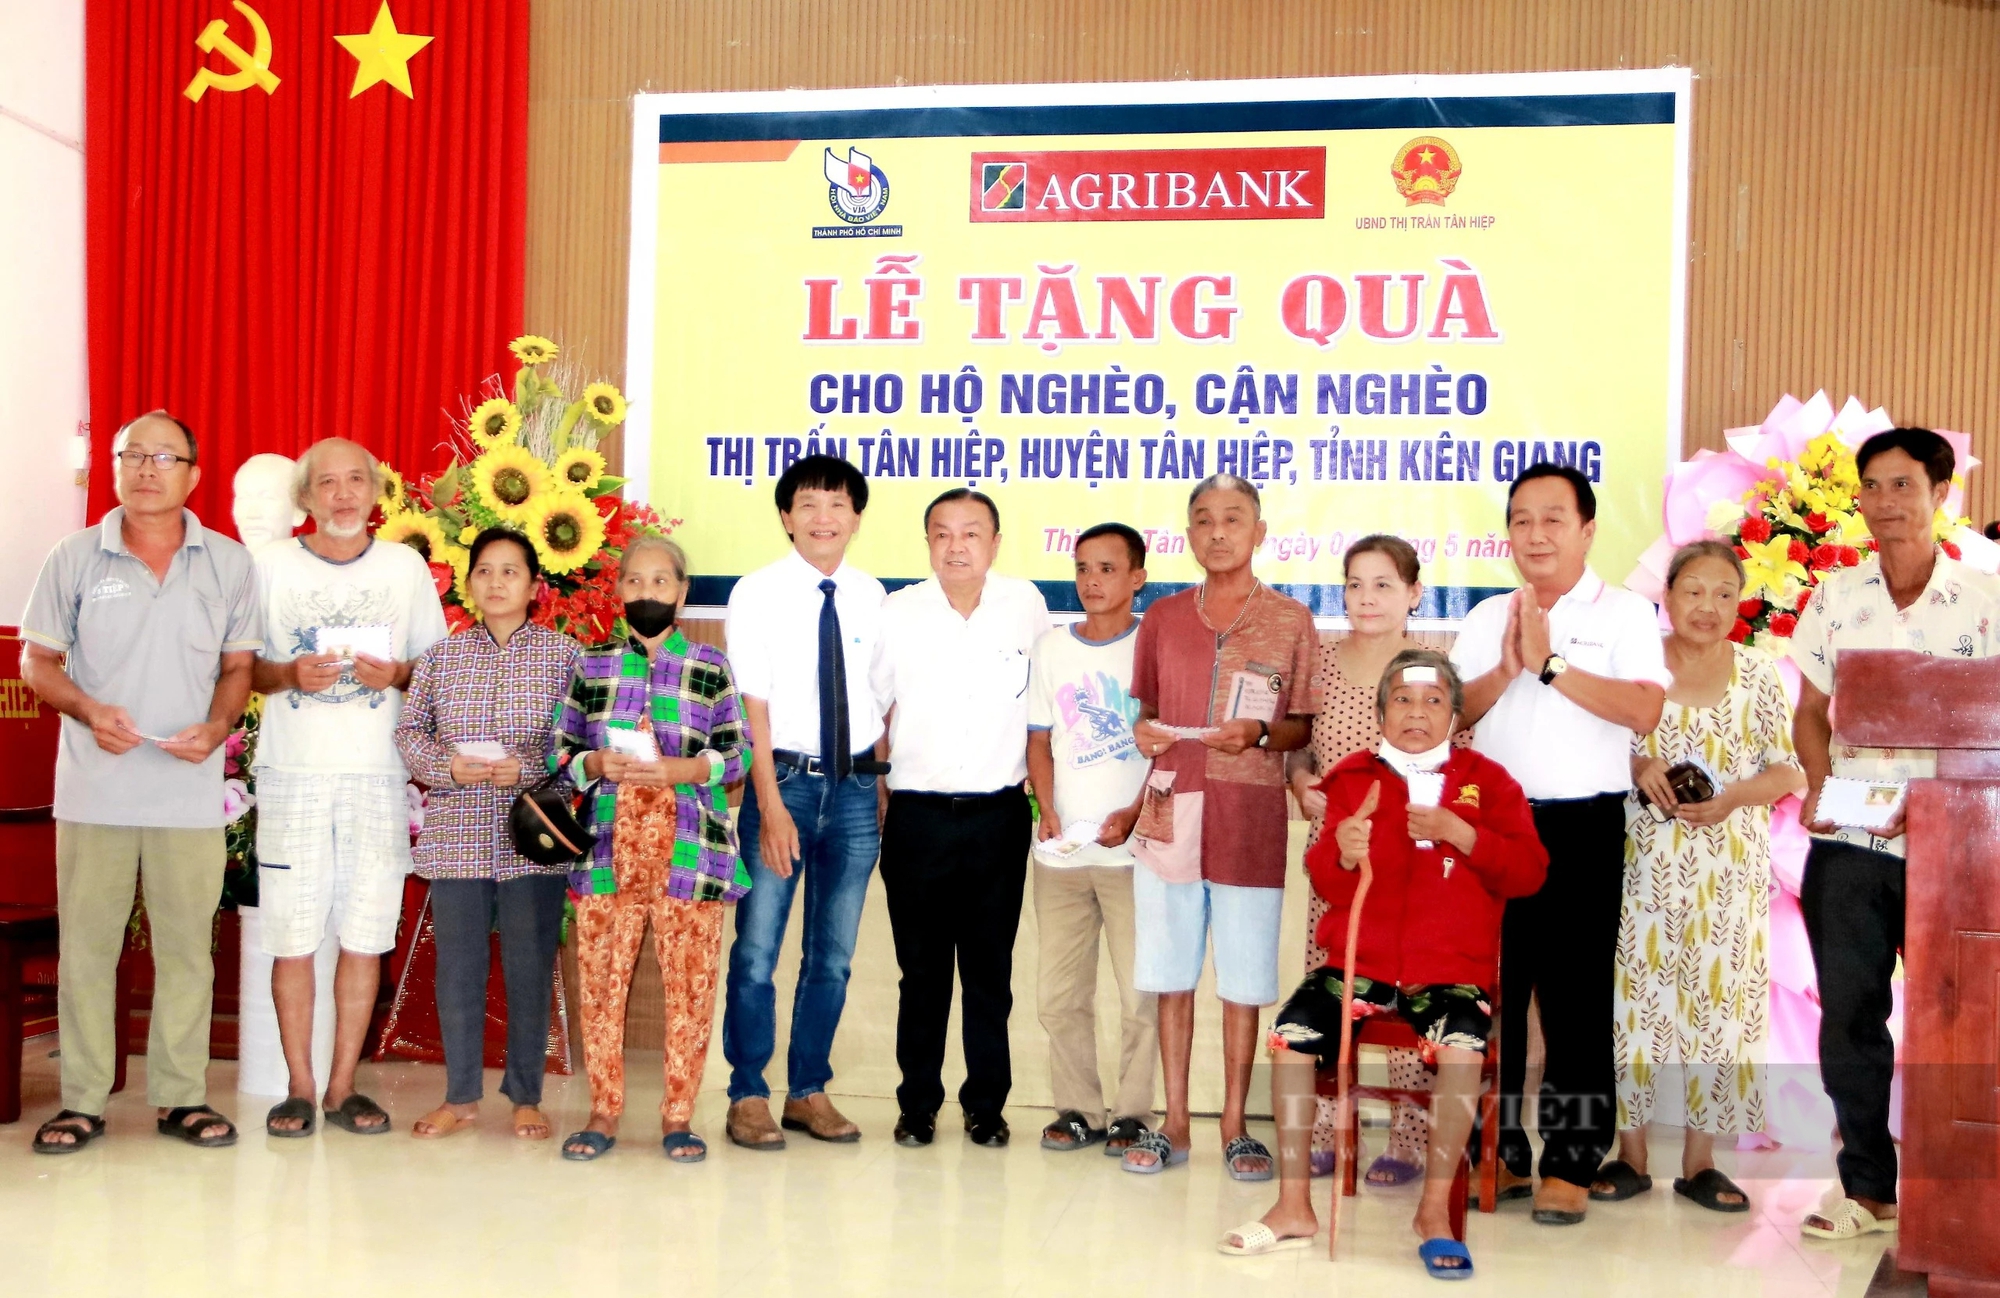 Agribank trao An sinh xã hội tại huyện Tân Hiệp, tỉnh Kiên Giang- Ảnh 2.